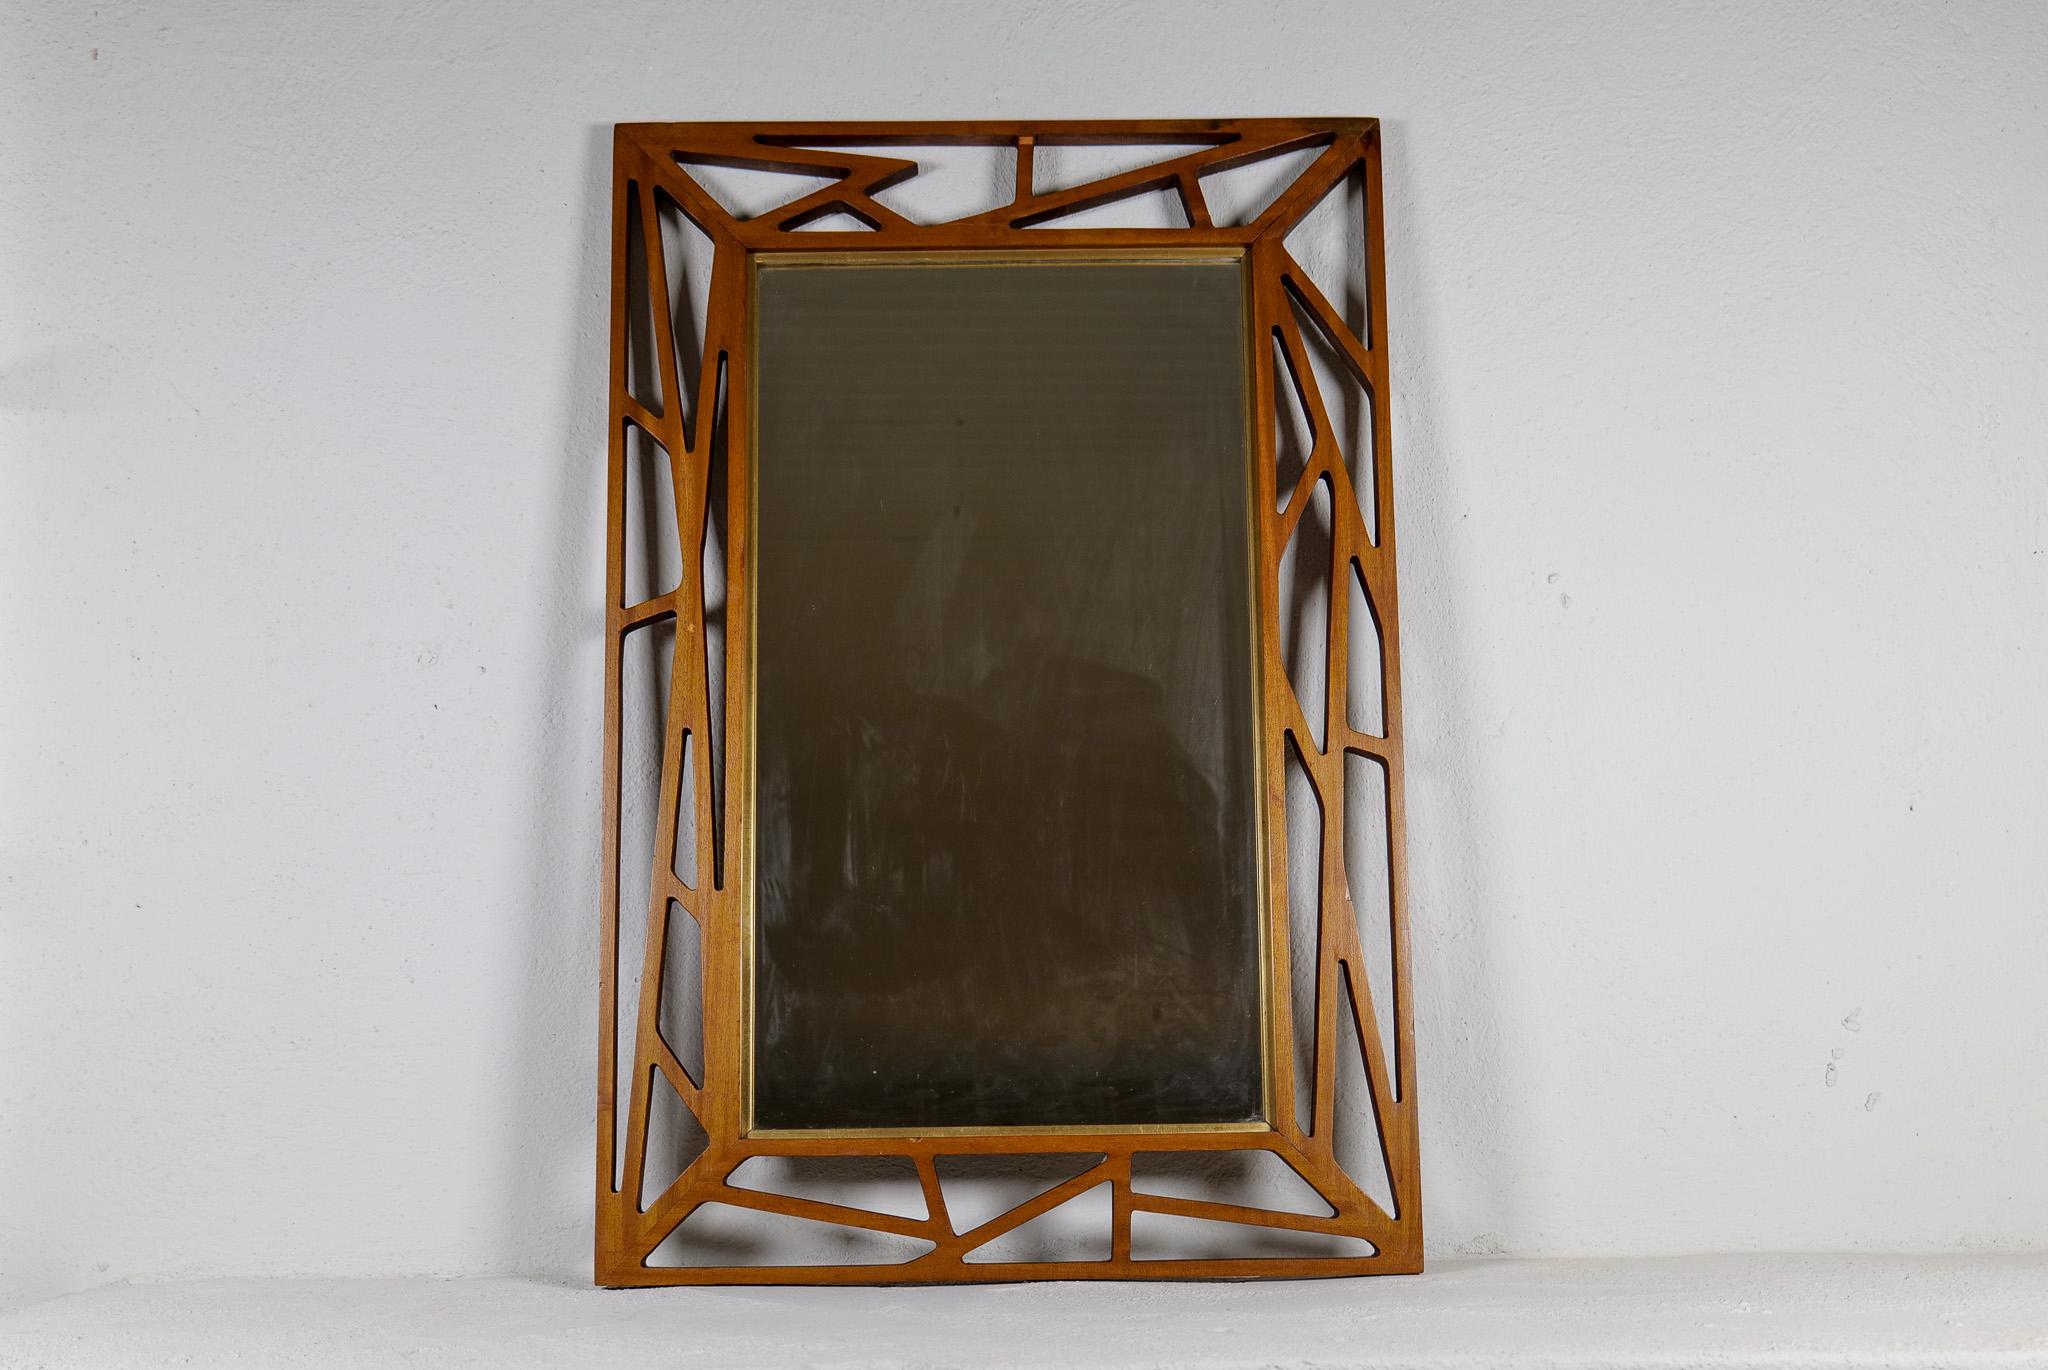 Ce miroir au design exceptionnel a été conçu par Yngve Ekström dans les années 1950, en Suède. 